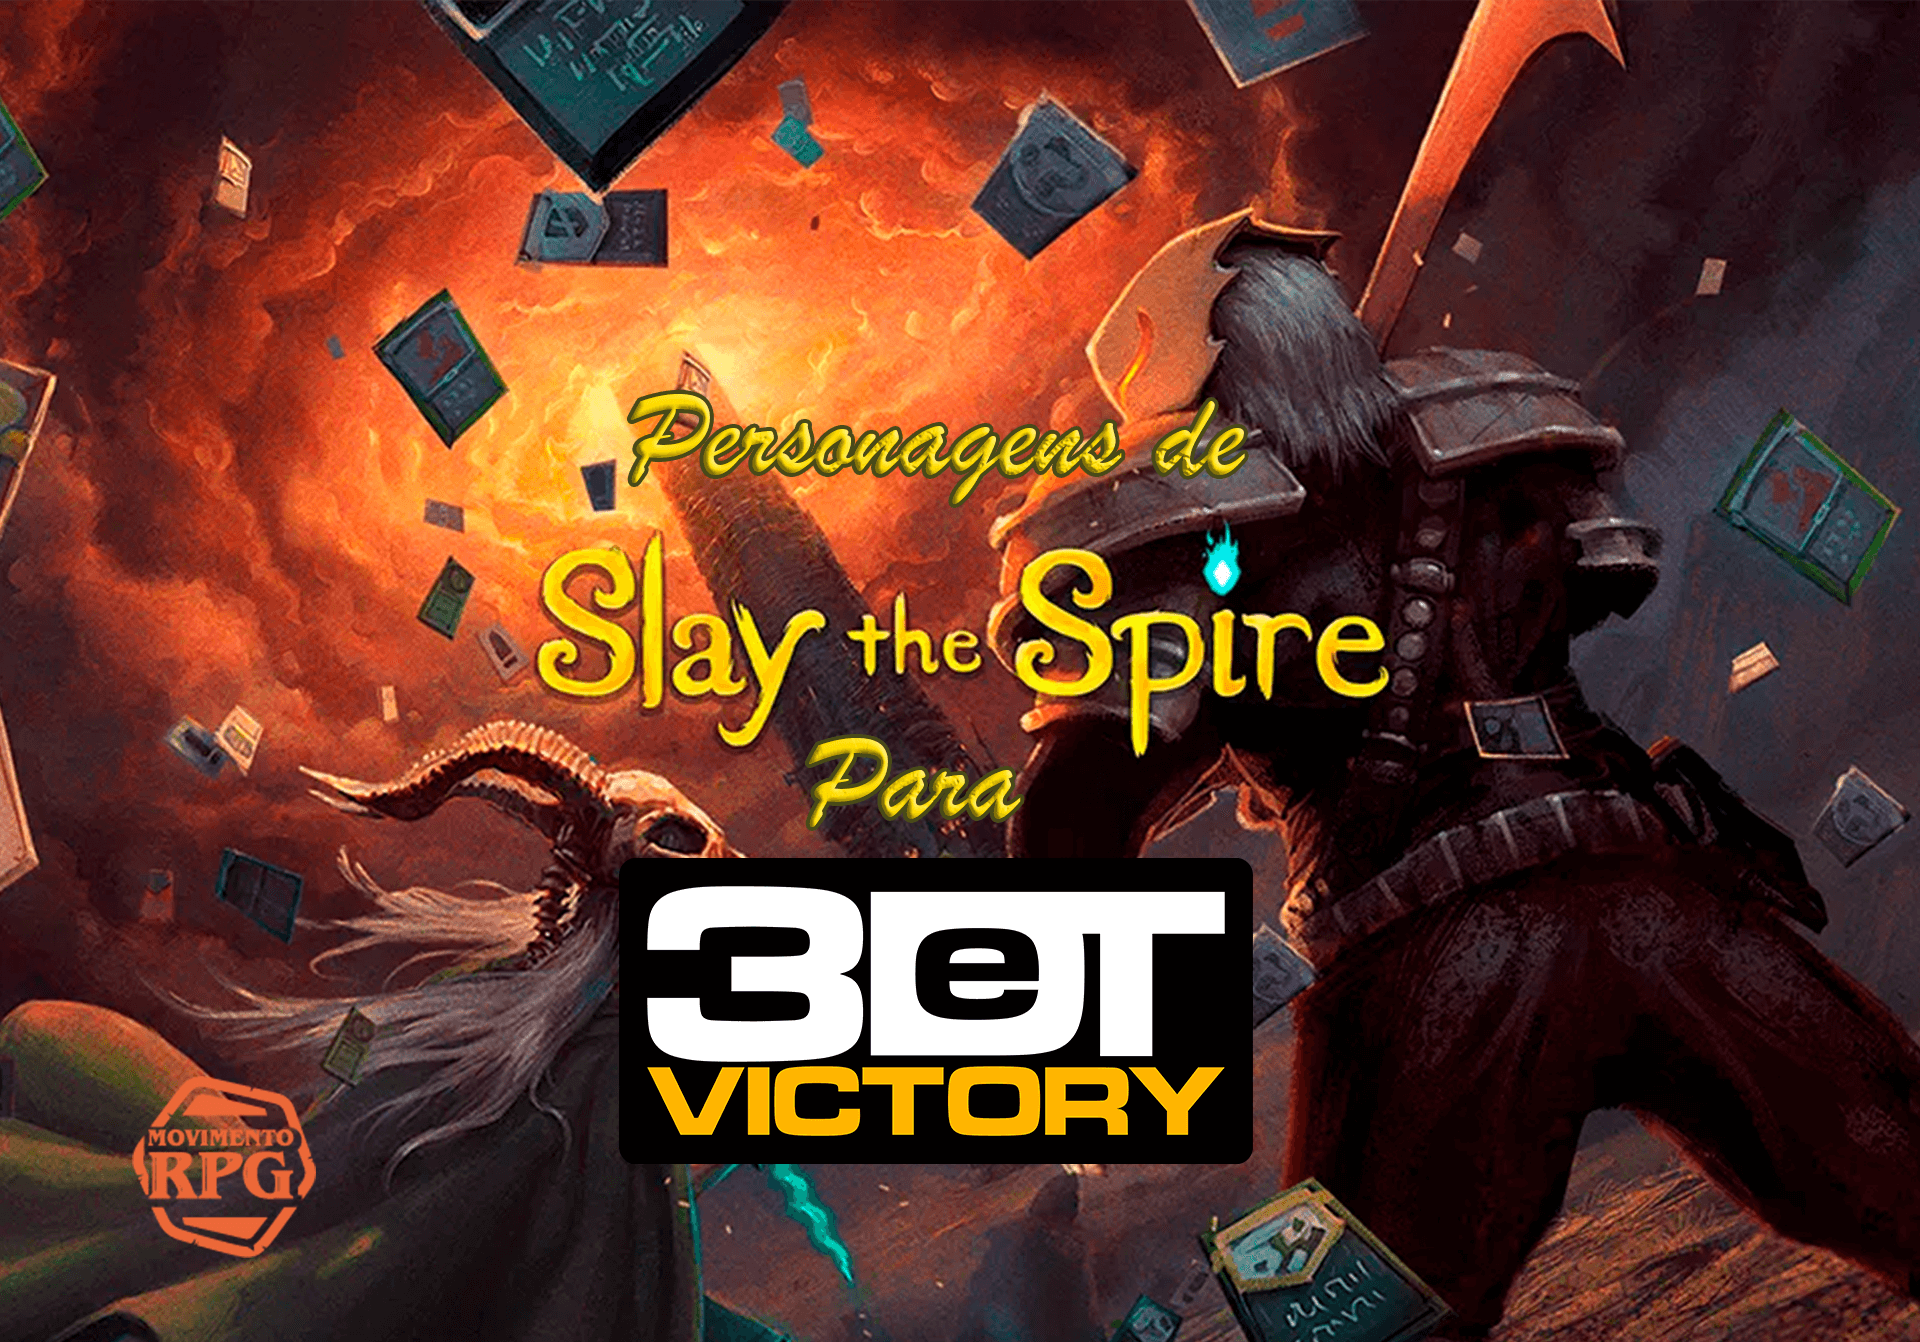 Os Personagens de Slay The Spire para 3DeT Victory